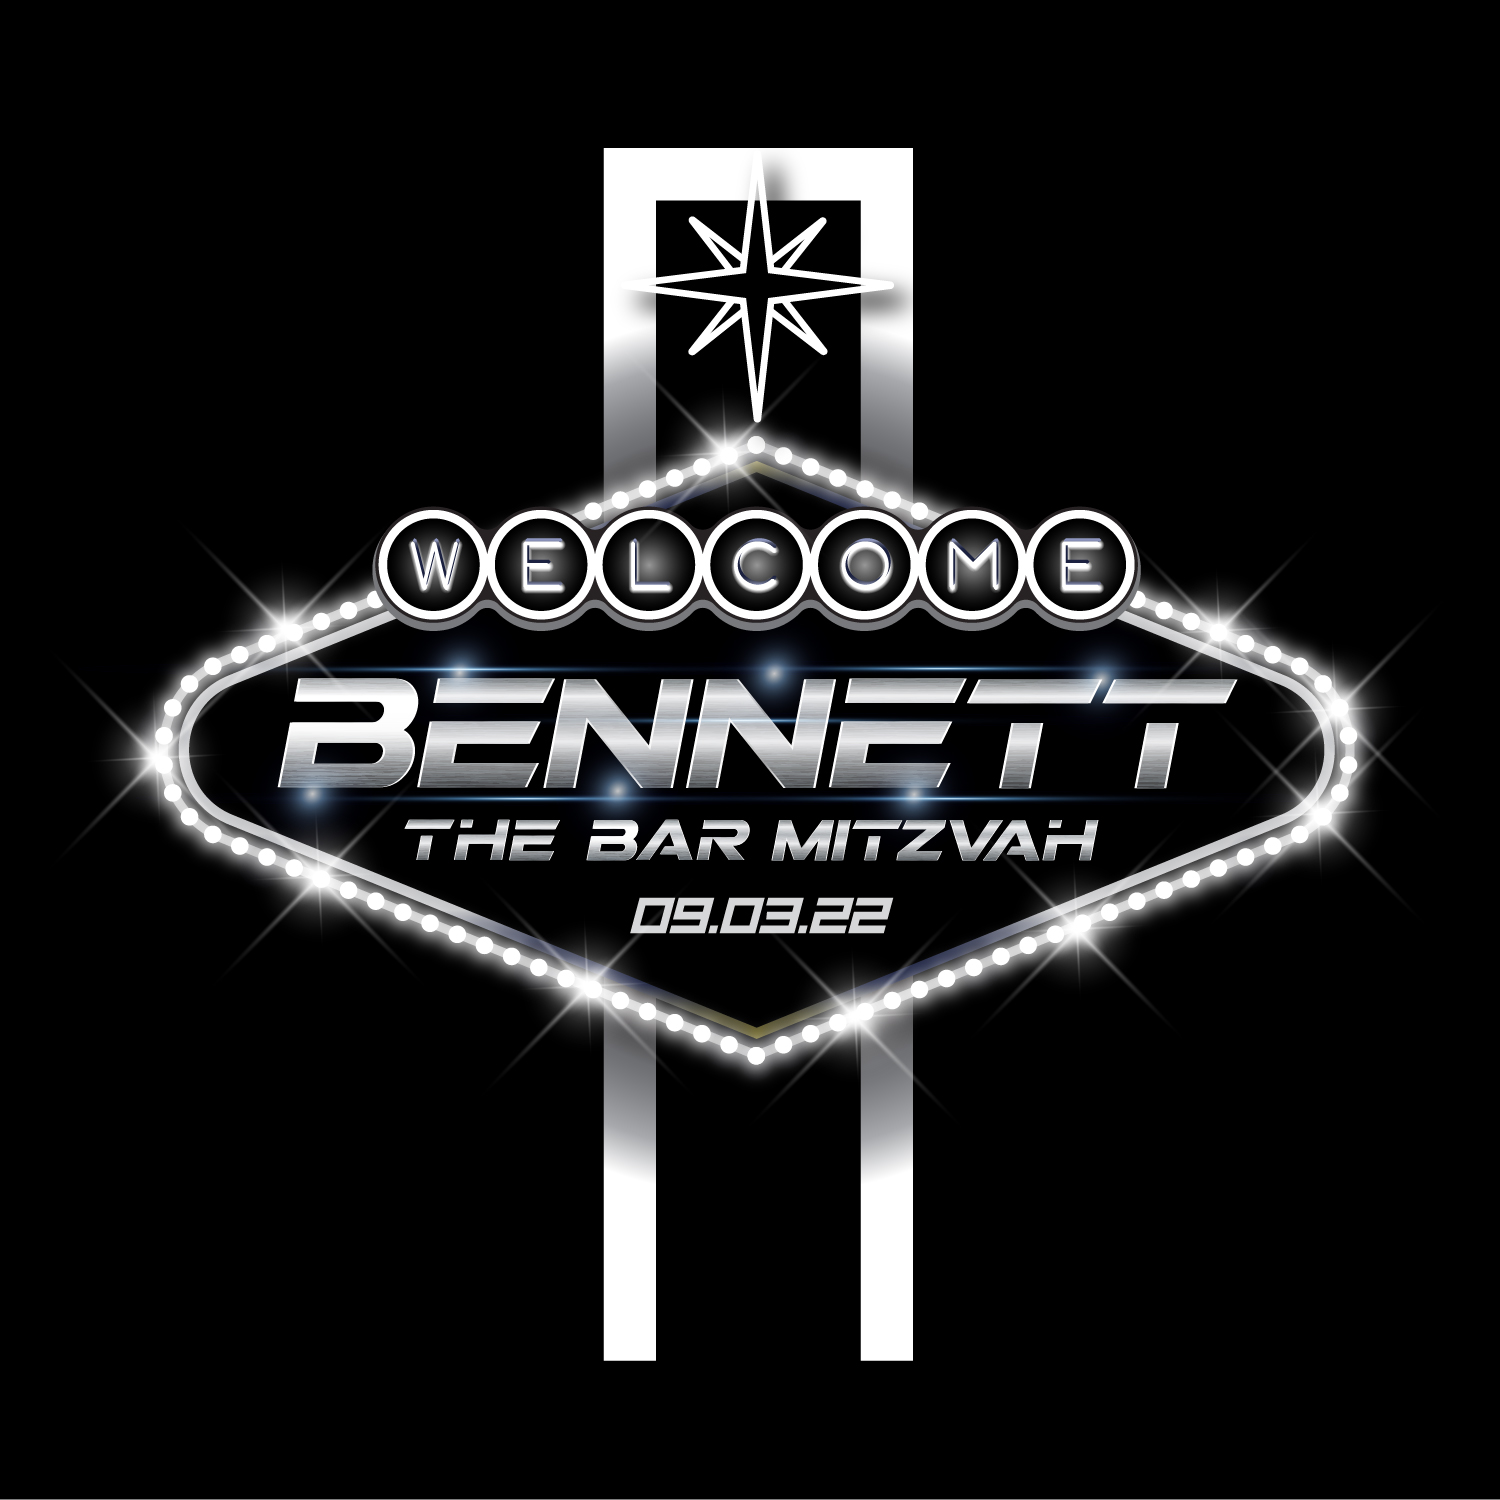 Bennett’s Bar Mitzvah logo